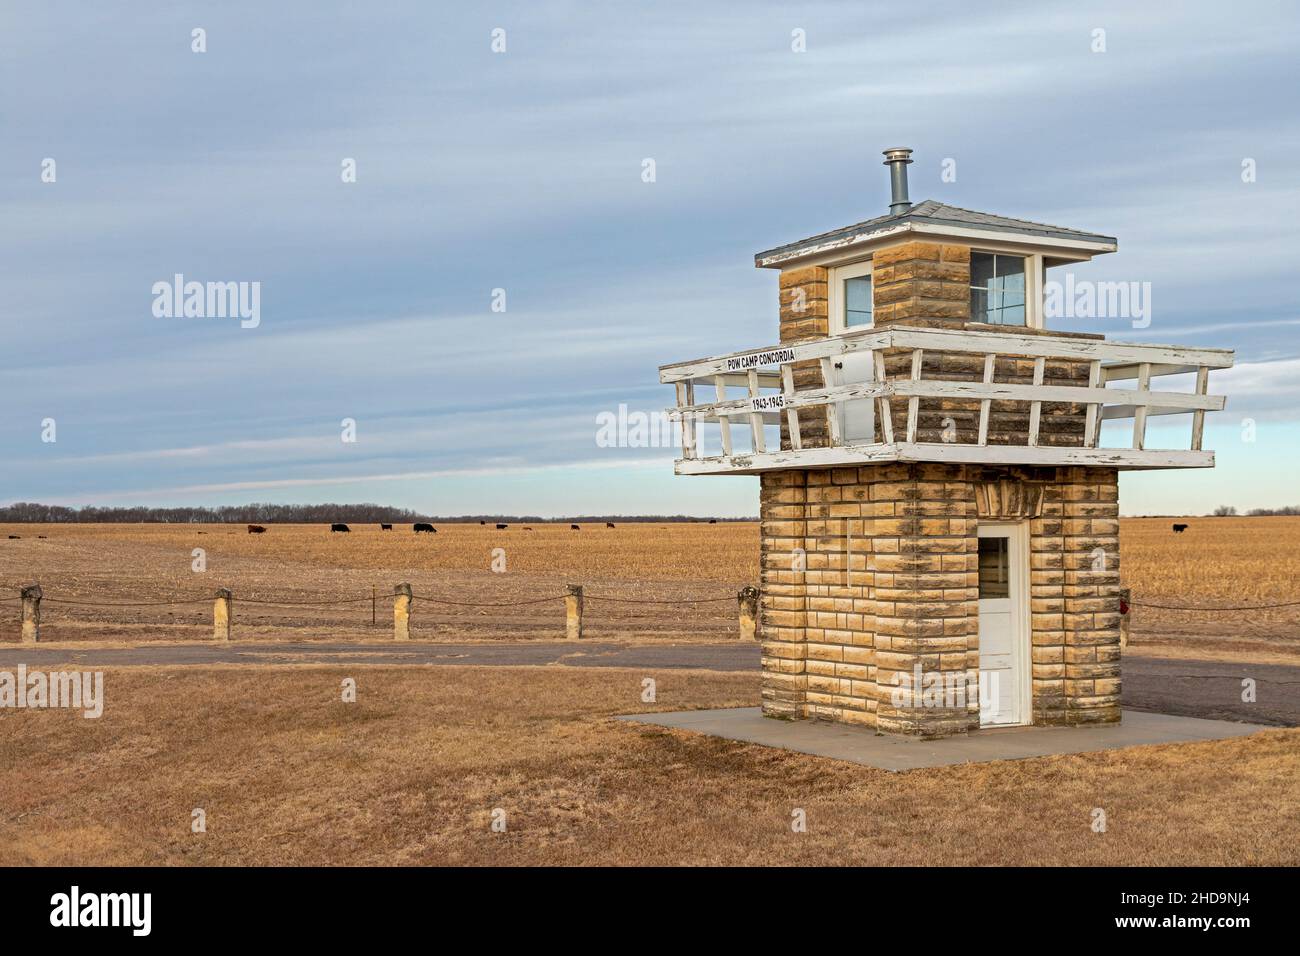 Concordia, Kansas - una torre di guardia del campo di guerra della seconda guerra mondiale che tenne più di 4.000 soldati tedeschi dal 1943 al 1945. Il campo aveva 30 Foto Stock